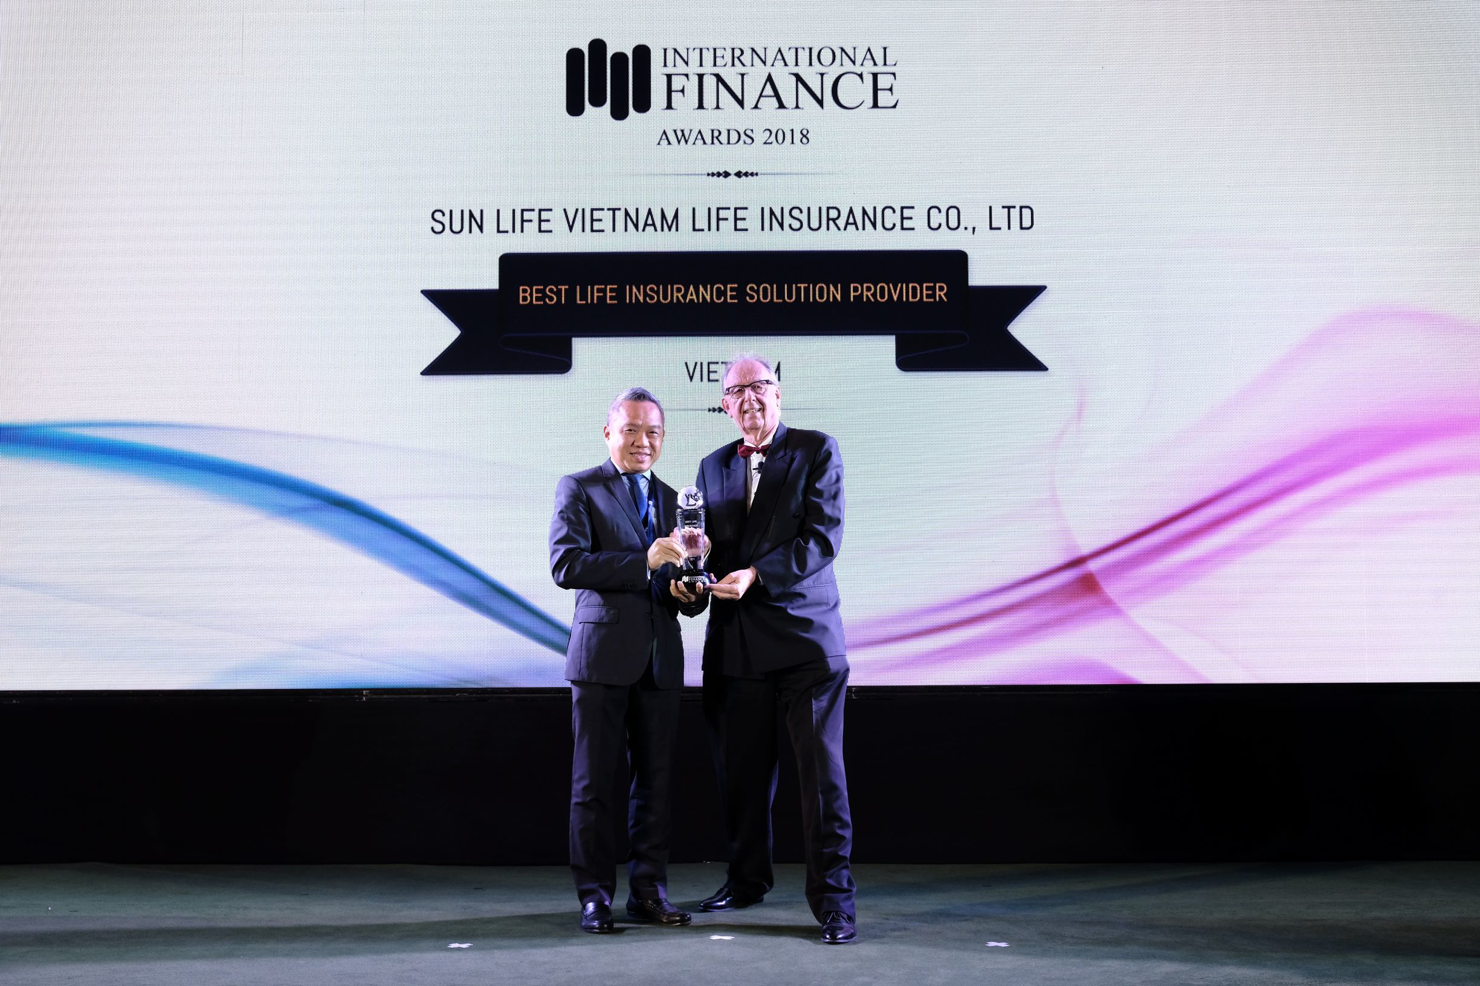 Đại diện Sun Life Việt Nam nhận giải thưởng "Công ty cung cấp giải pháp bảo hiểm nhân thọ tốt nhất Việt Nam 2018".